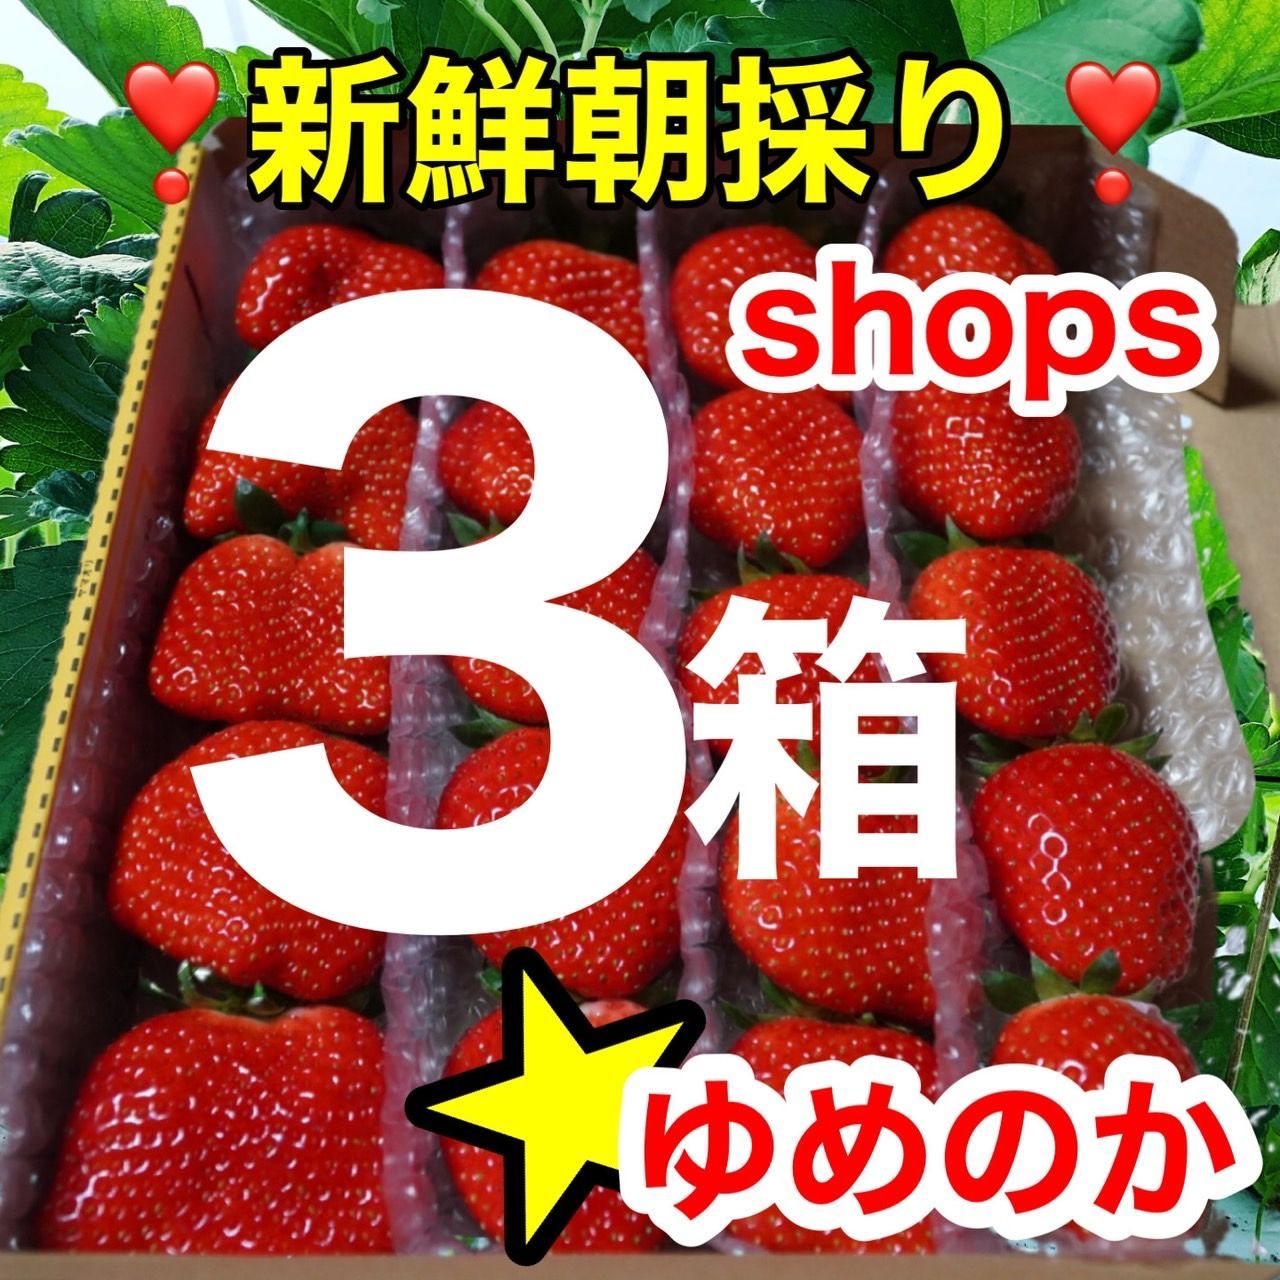 shops大粒３箱セット かんちゃん農園の甘いイチゴ - かんちゃん農園